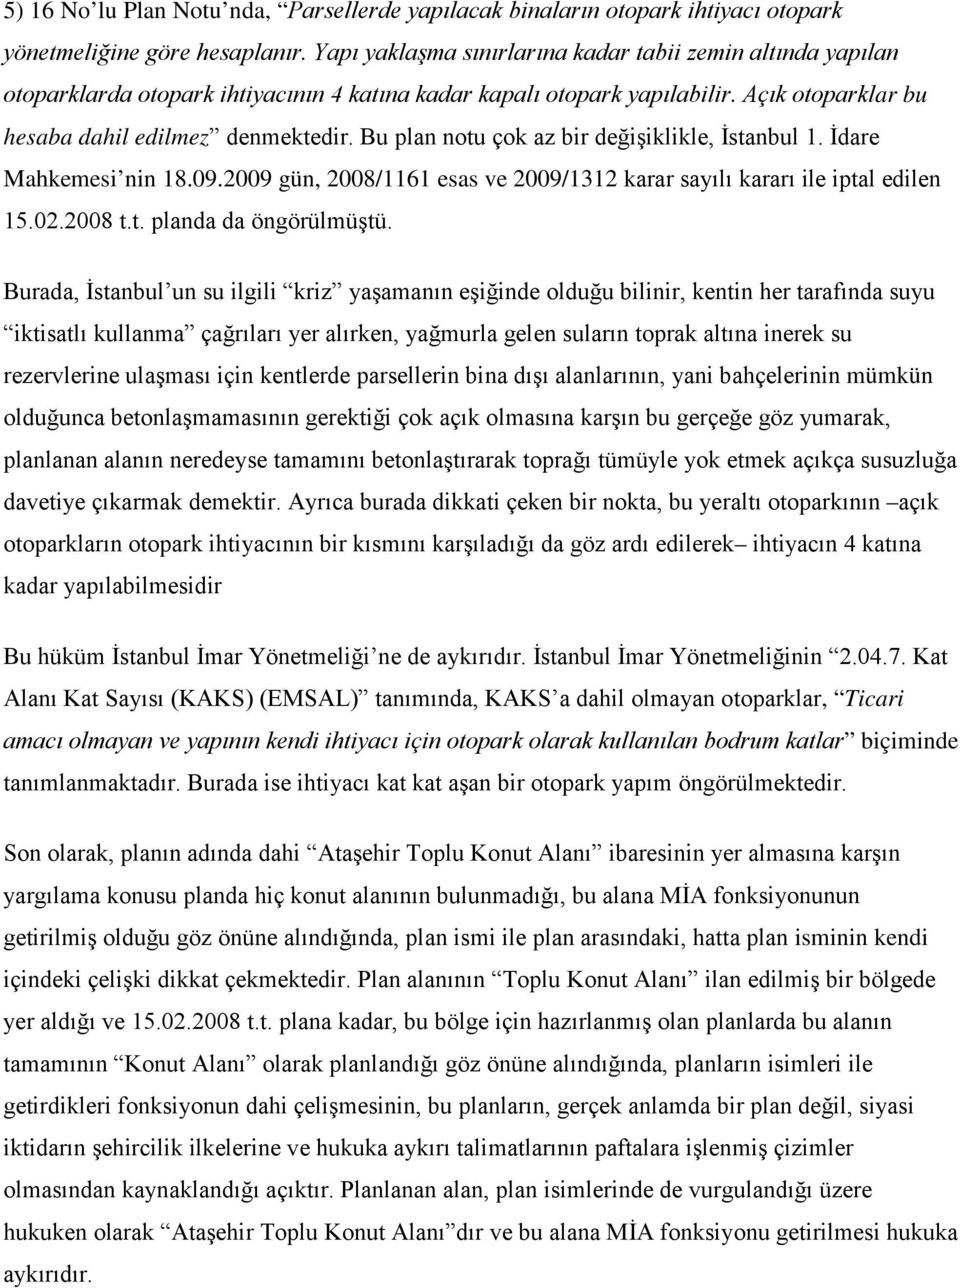 Bu plan notu çok az bir değişiklikle, İstanbul 1. İdare Mahkemesi nin 18.09.2009 gün, 2008/1161 esas ve 2009/1312 karar sayılı kararı ile iptal edilen 15.02.2008 t.t. planda da öngörülmüştü.